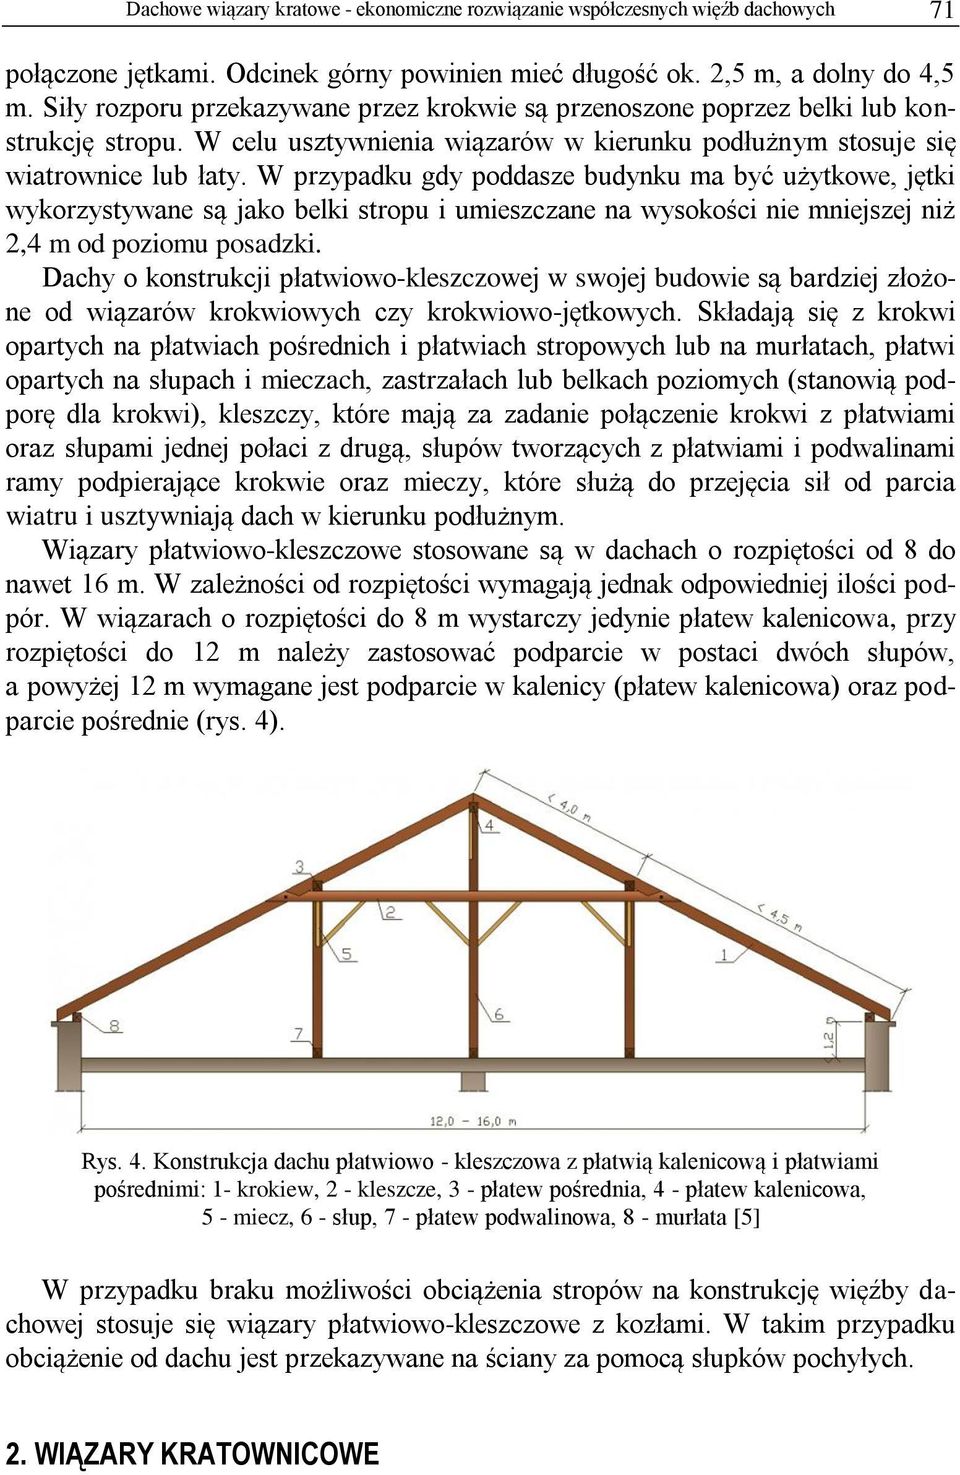 W przypadku gdy poddasze budynku ma być użytkowe, jętki wykorzystywane są jako belki stropu i umieszczane na wysokości nie mniejszej niż 2,4 m od poziomu posadzki.